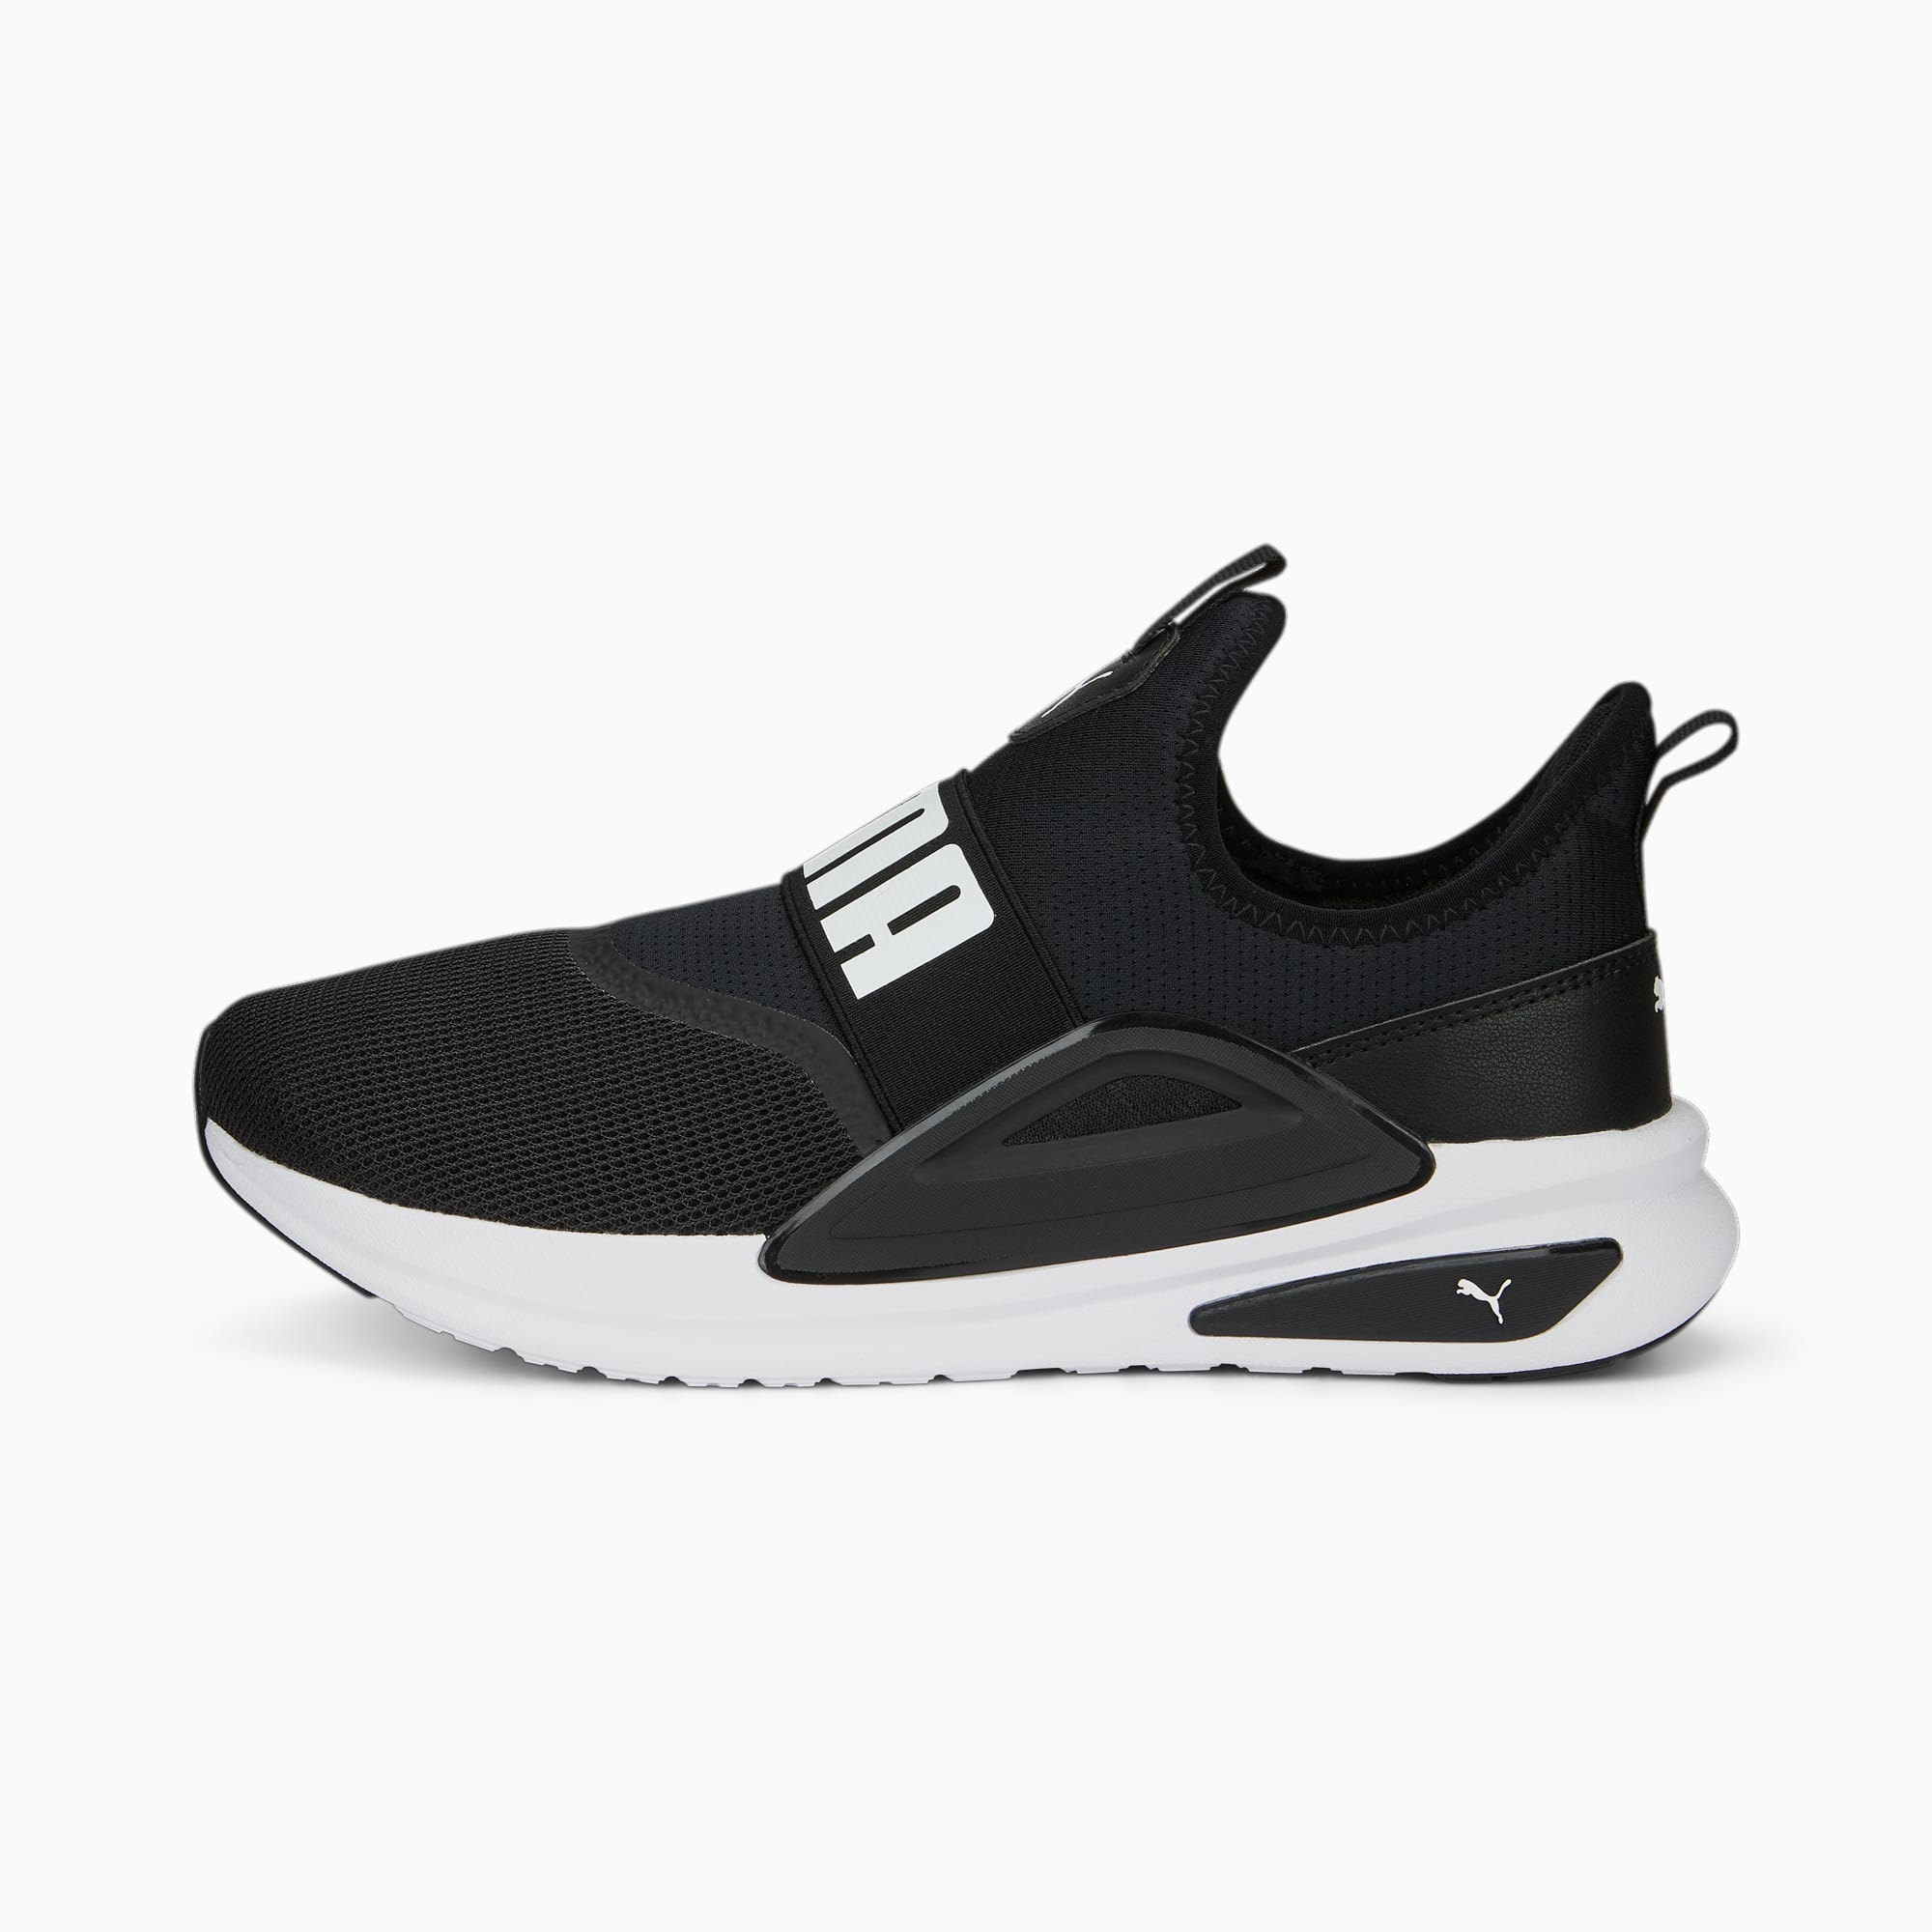 Softride Enzo Evo Slip-On Unisex Shoes | PUMA Black-PUMA White | PUMA ...